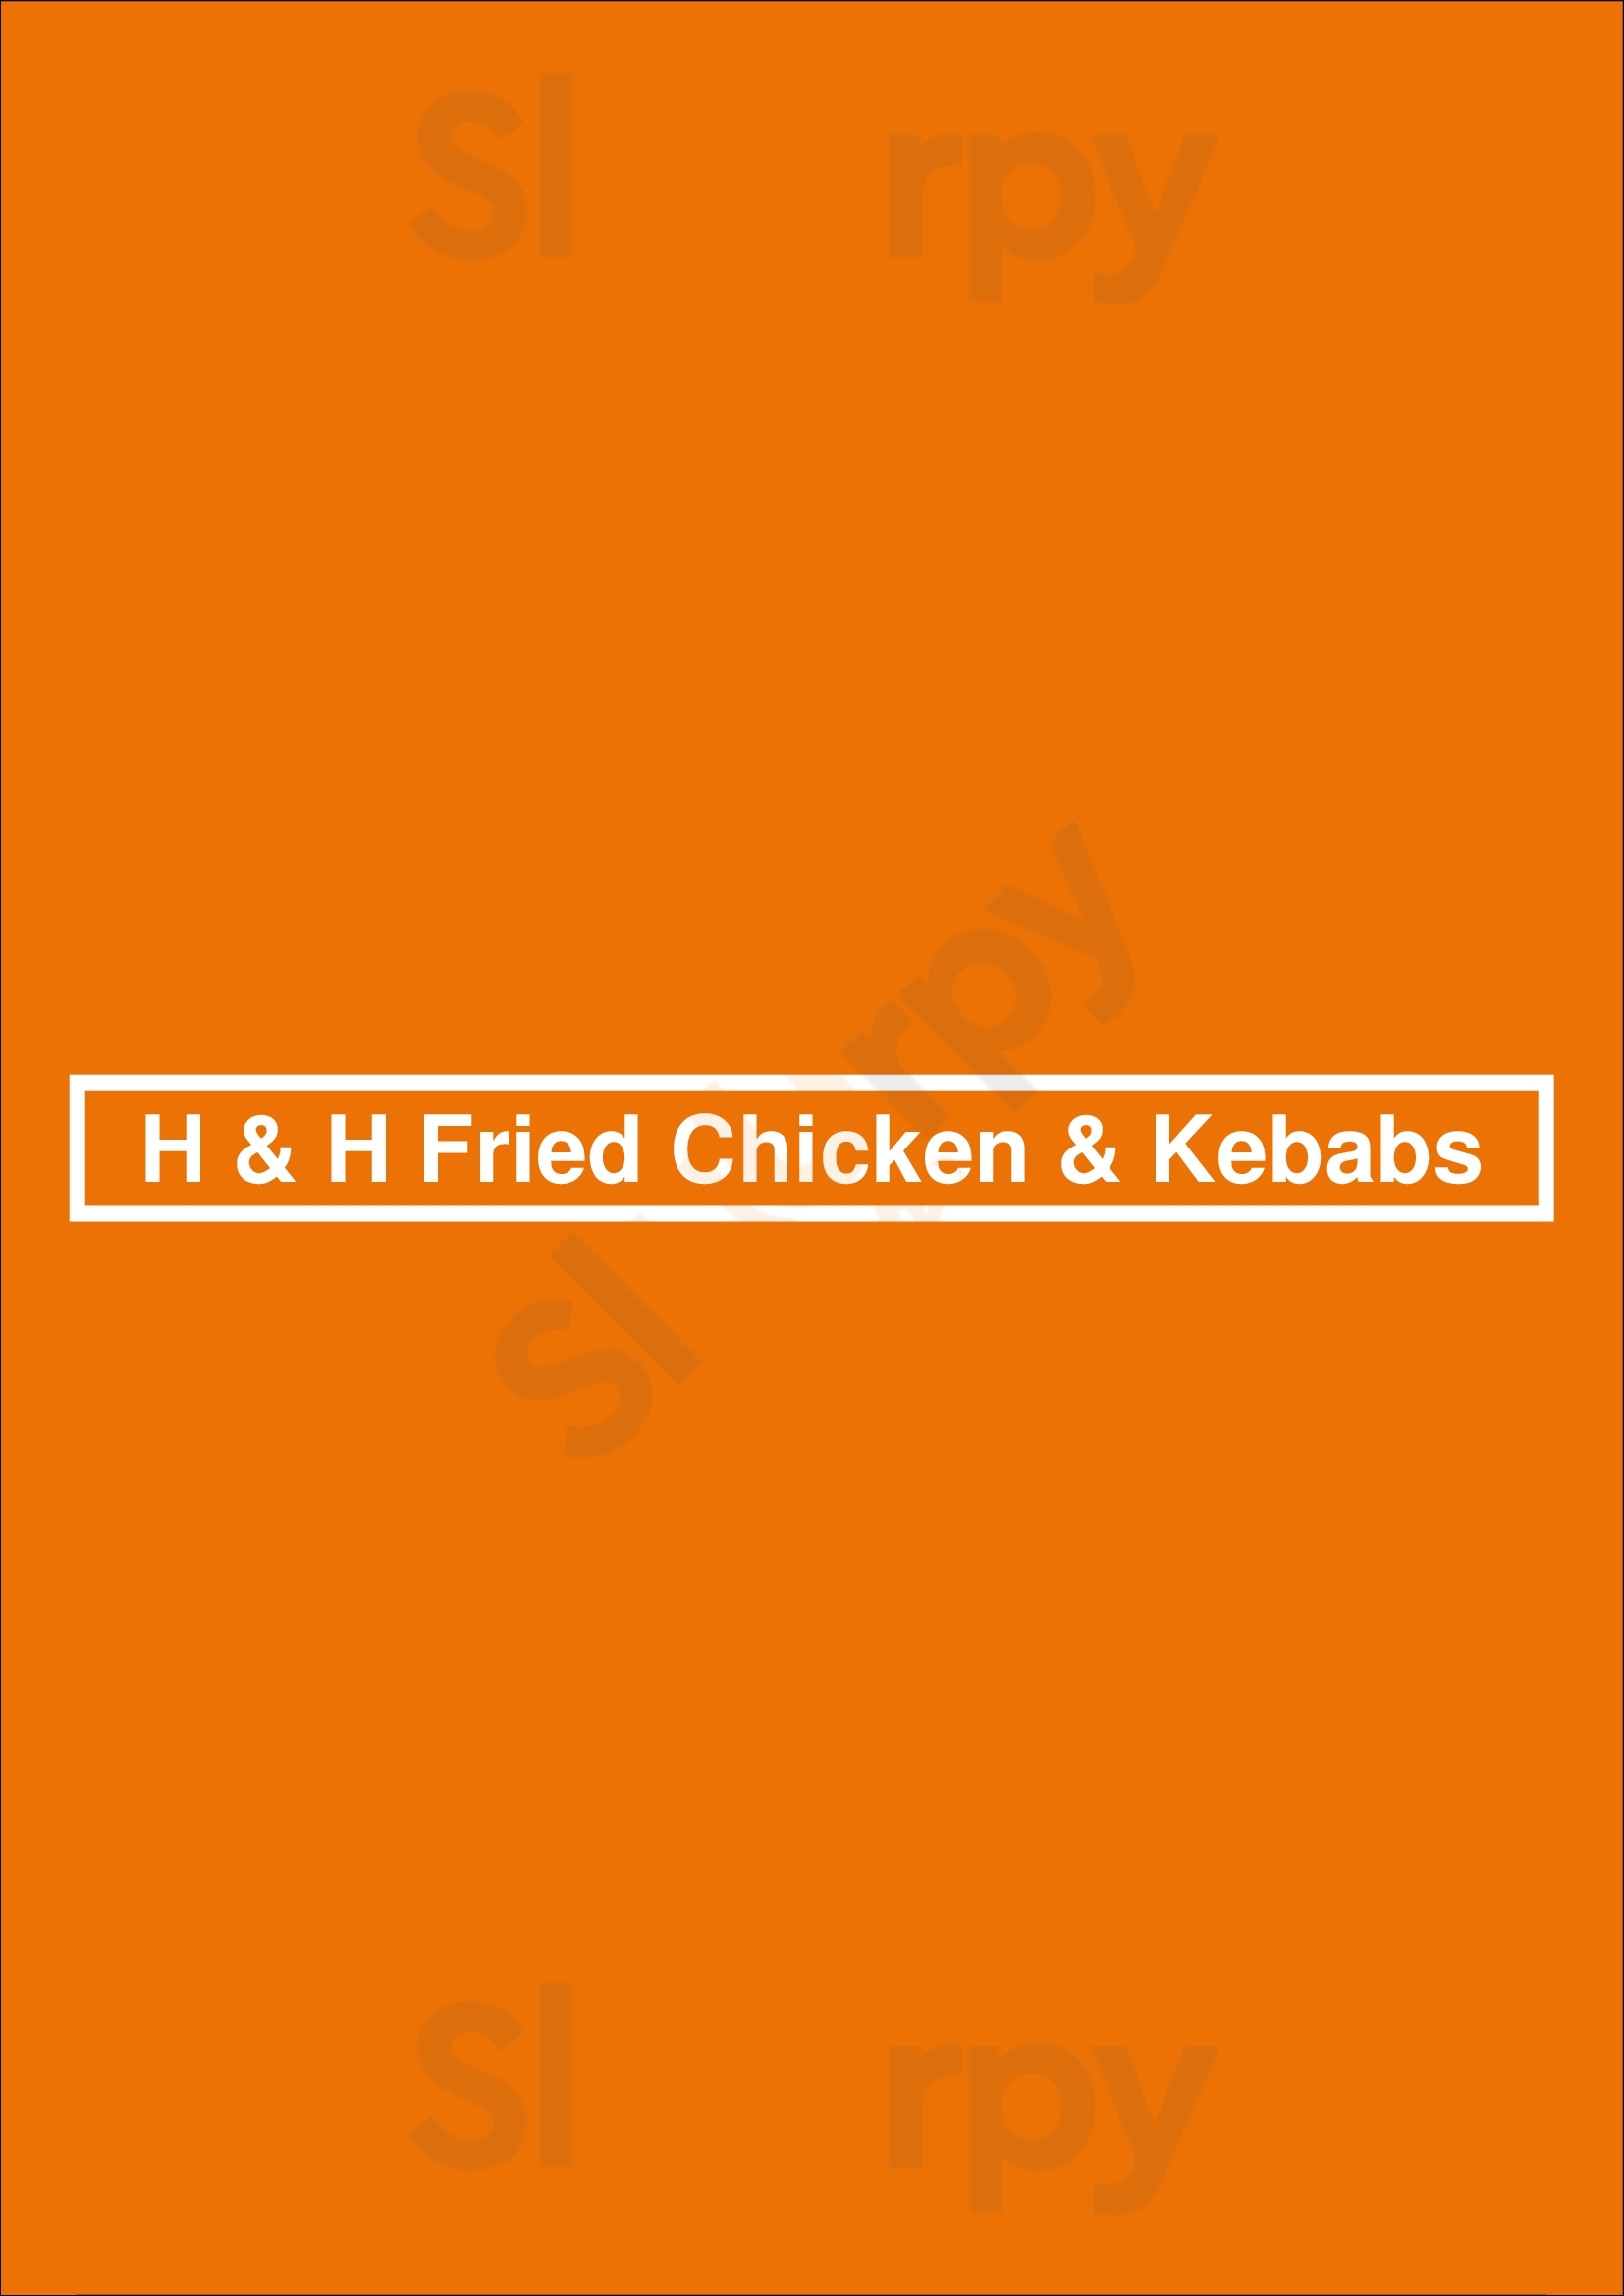 H & H Fried Chicken & Kebabs Luton Menu - 1